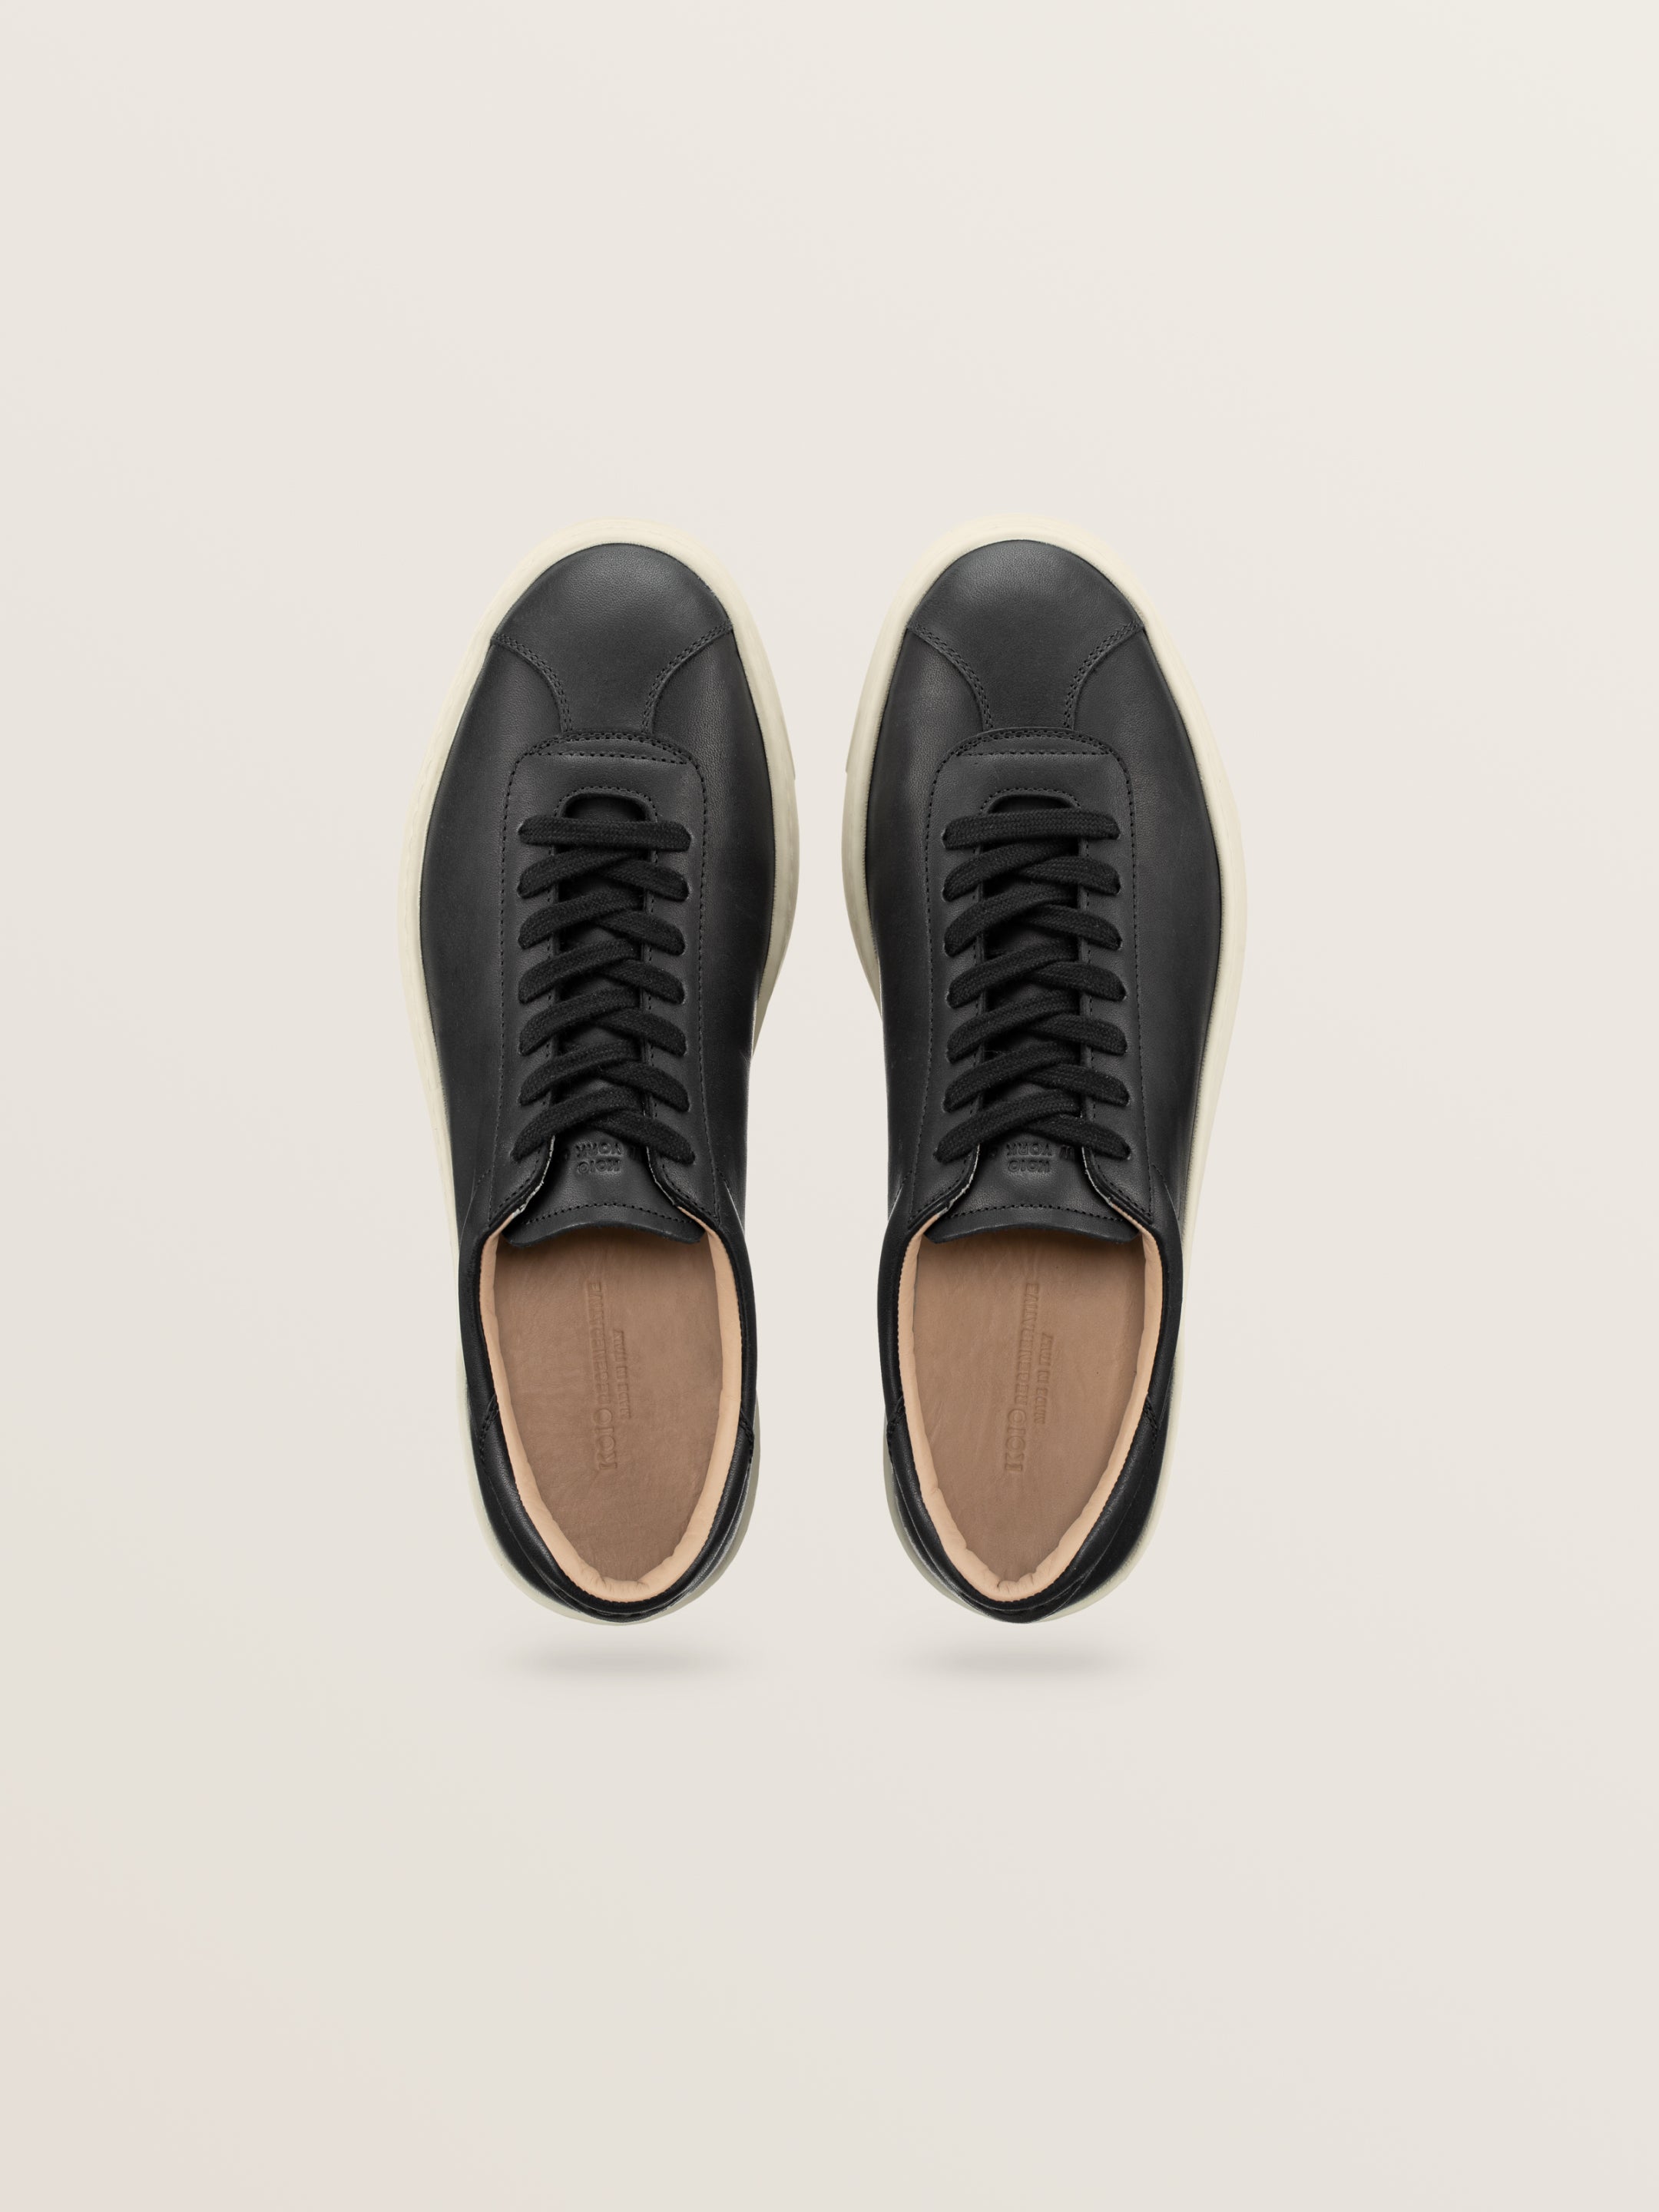 Men’s Black Leather Sneakers | Mello in Onyx | Koio – KOIO